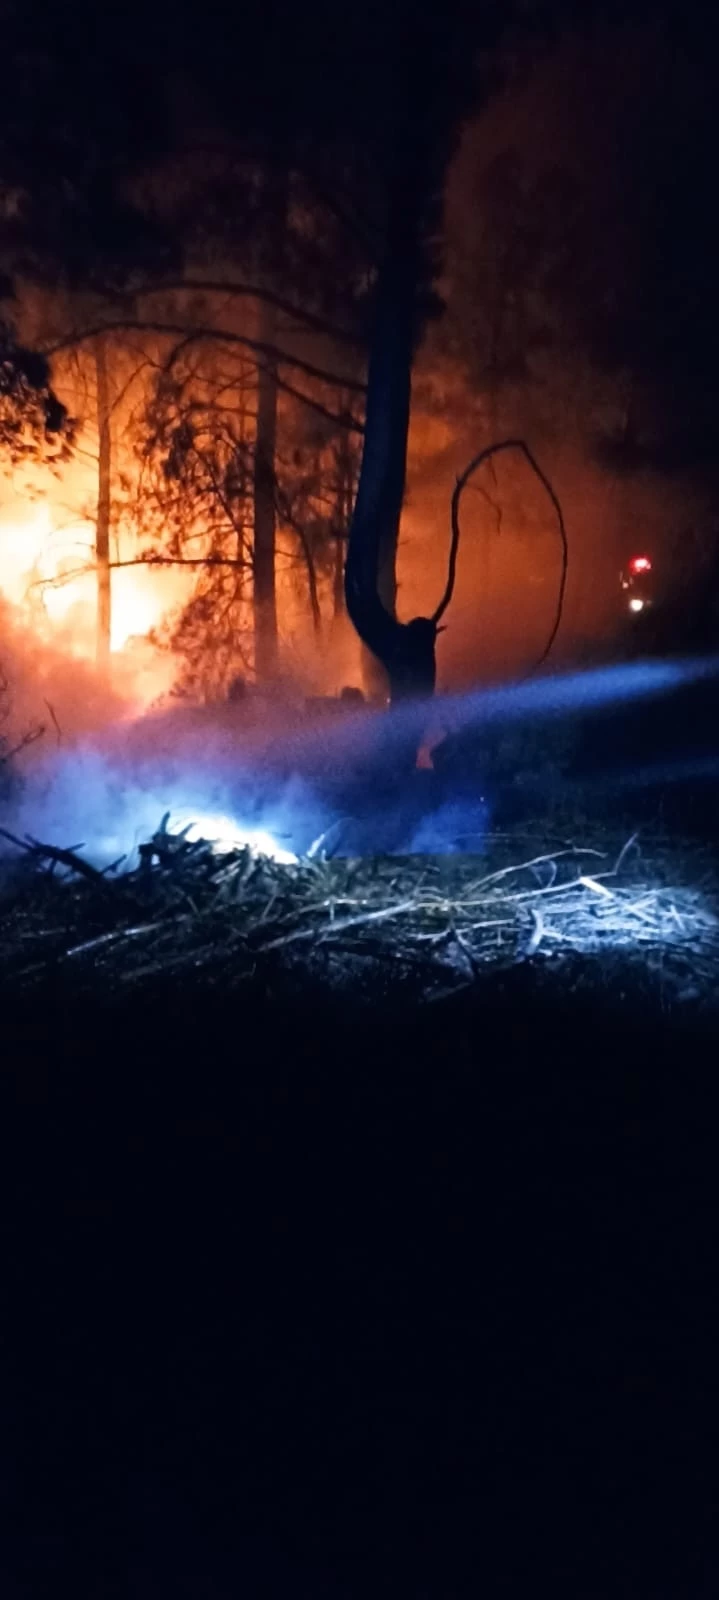 Orman yangını erken müdahale ile söndürüldü